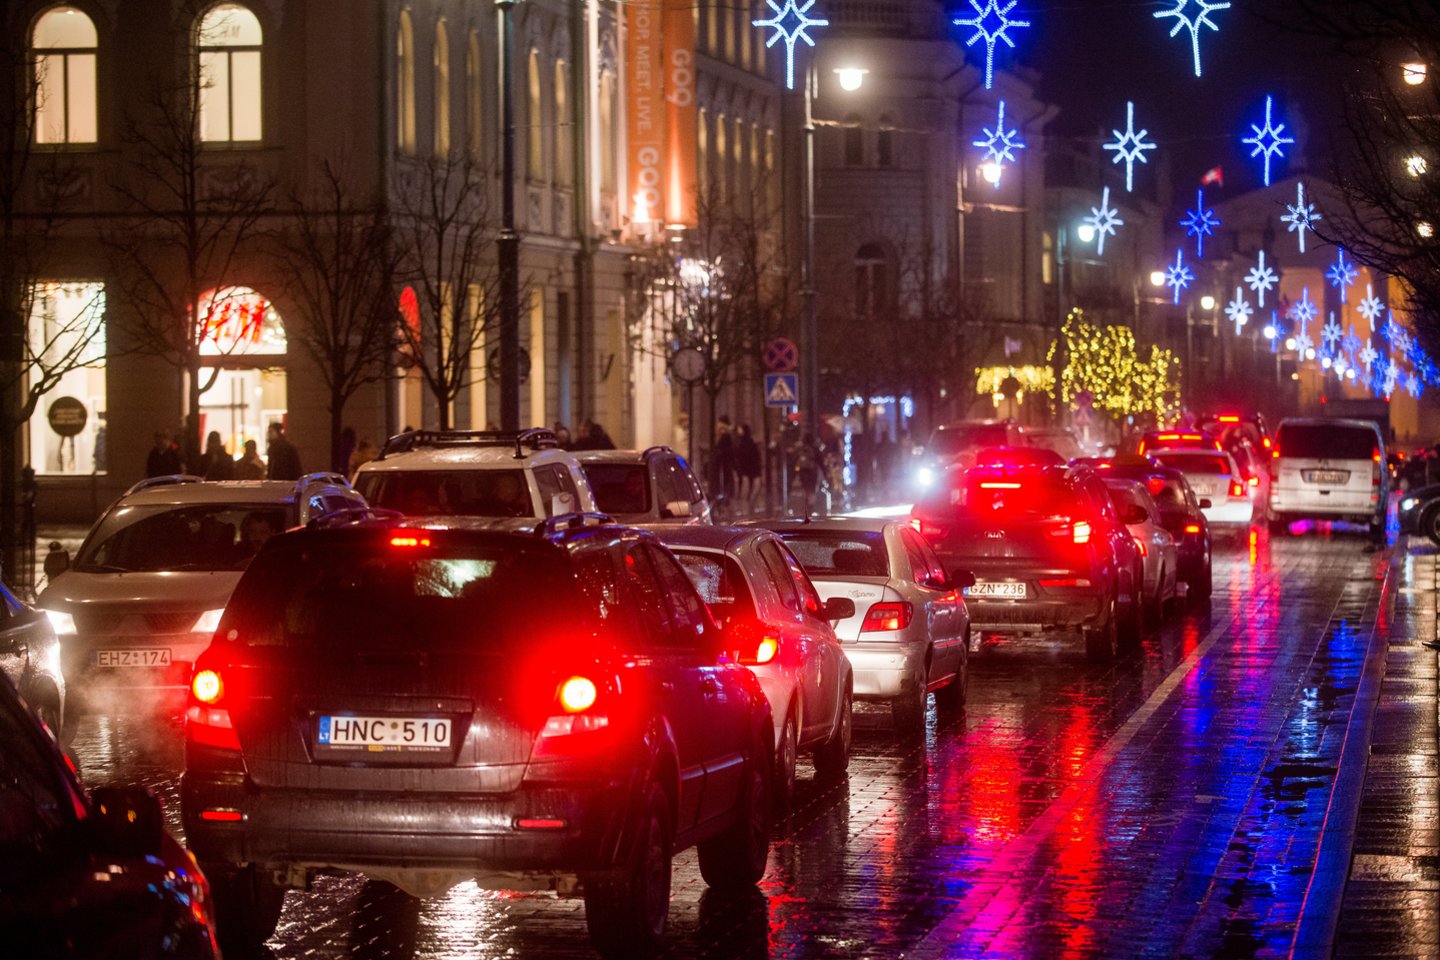 Ketvirtadienio naktį eismo sąlygas sunkins plikledis, įspėja Automobilių kelių direkcija.<br>J.Stacevičiaus nuotr.